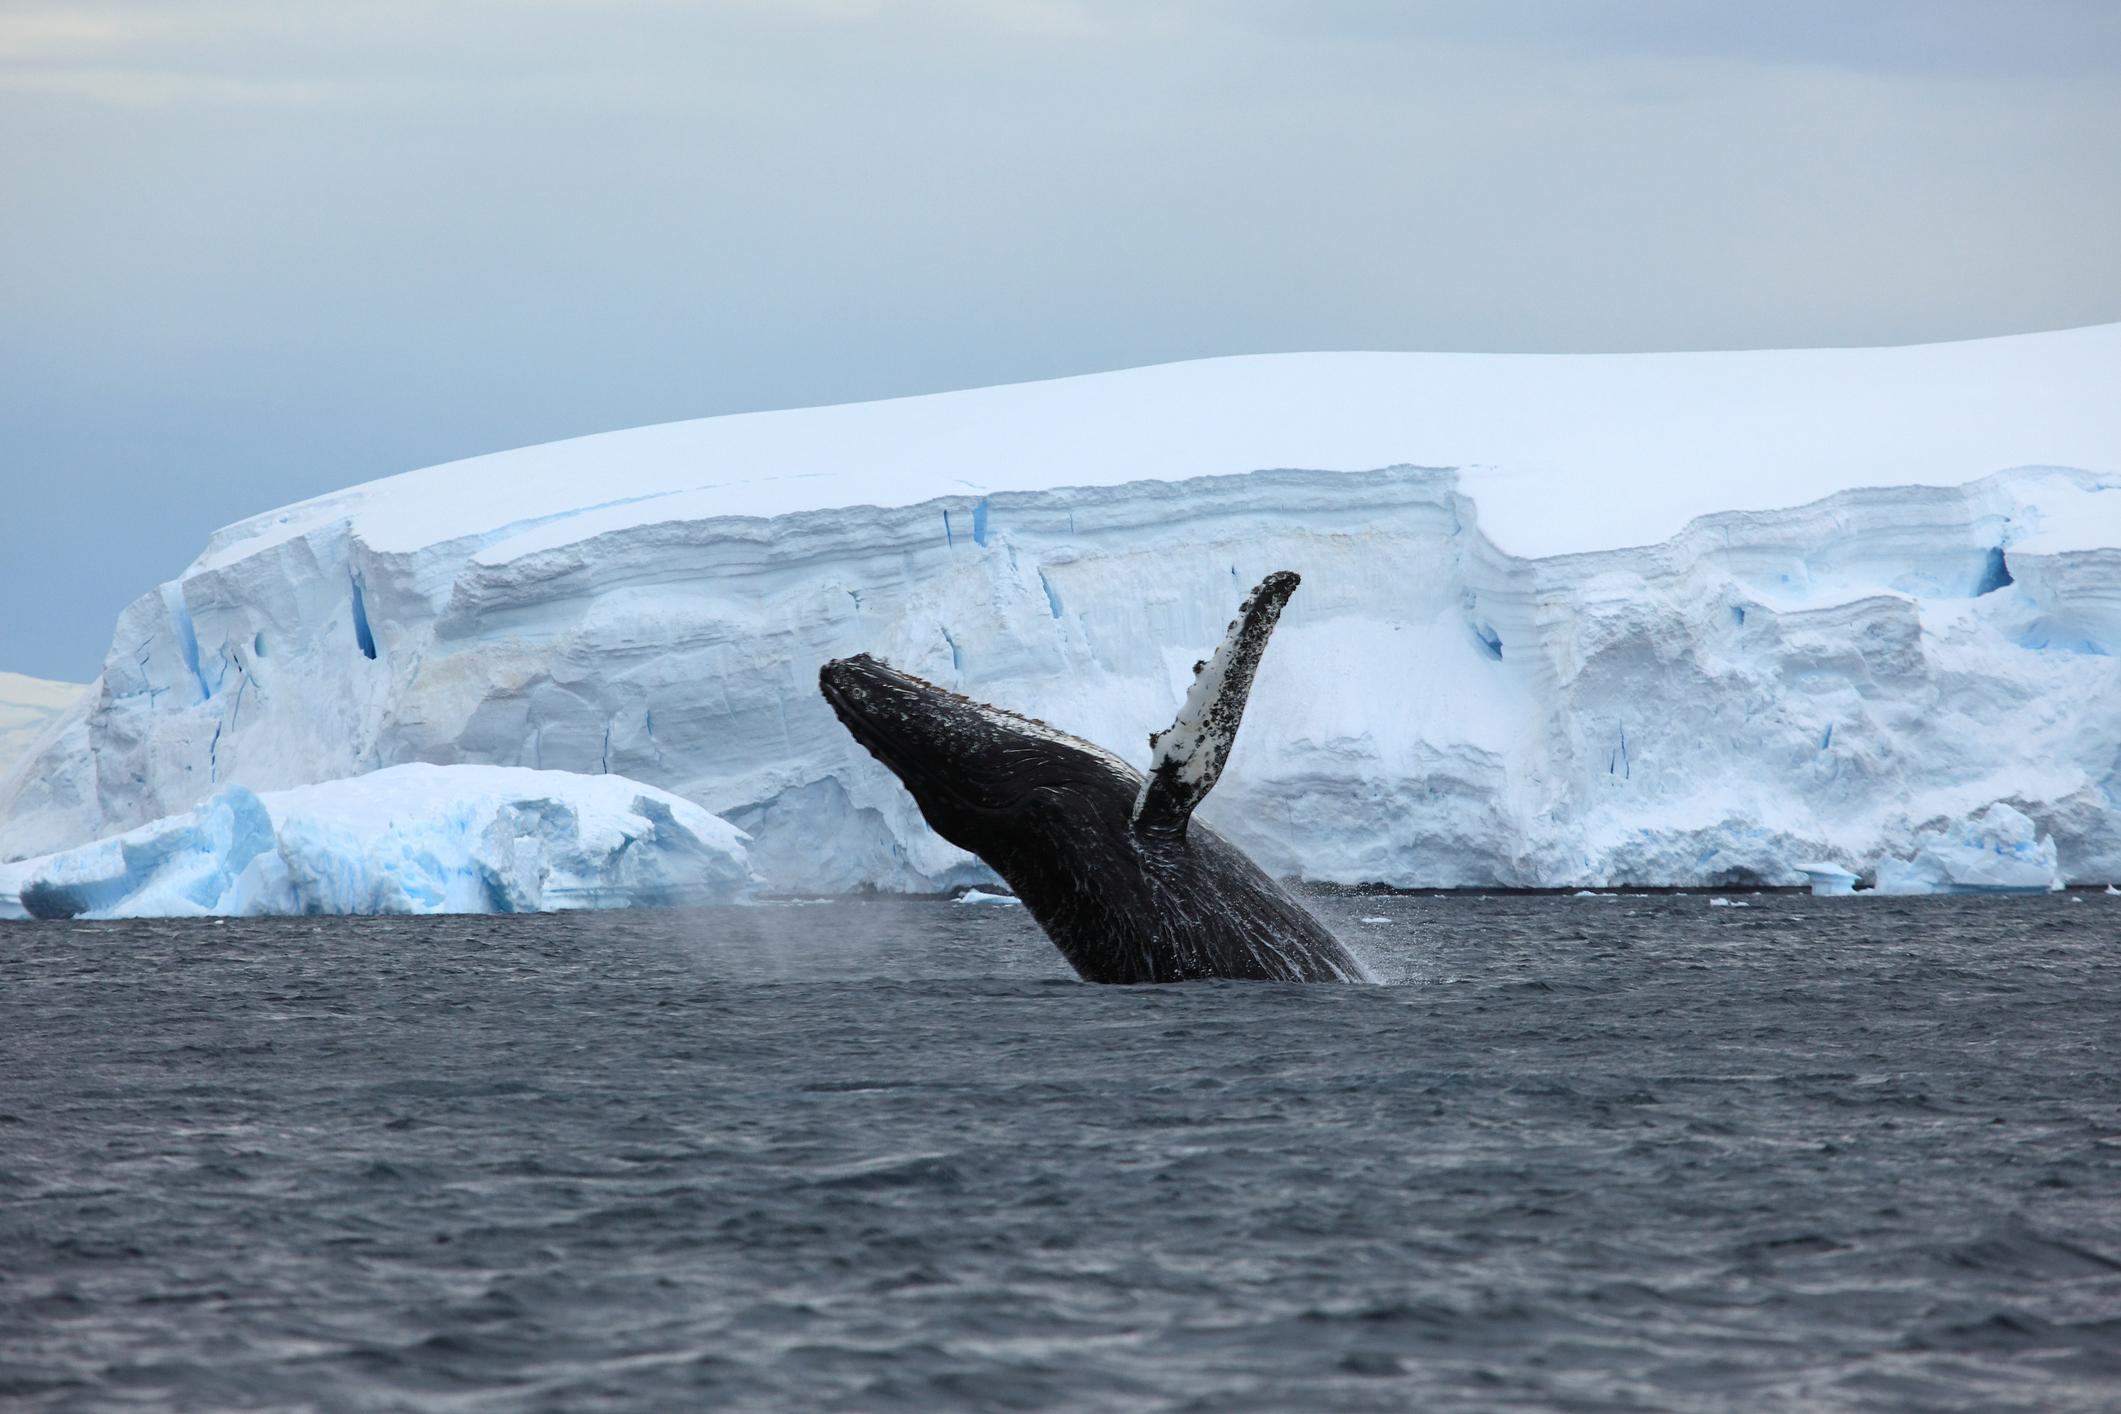 Balene azzurre, c’è speranza: ecco come gli studiosi sono riusciti a capire che stanno ripopolando l’Oceano